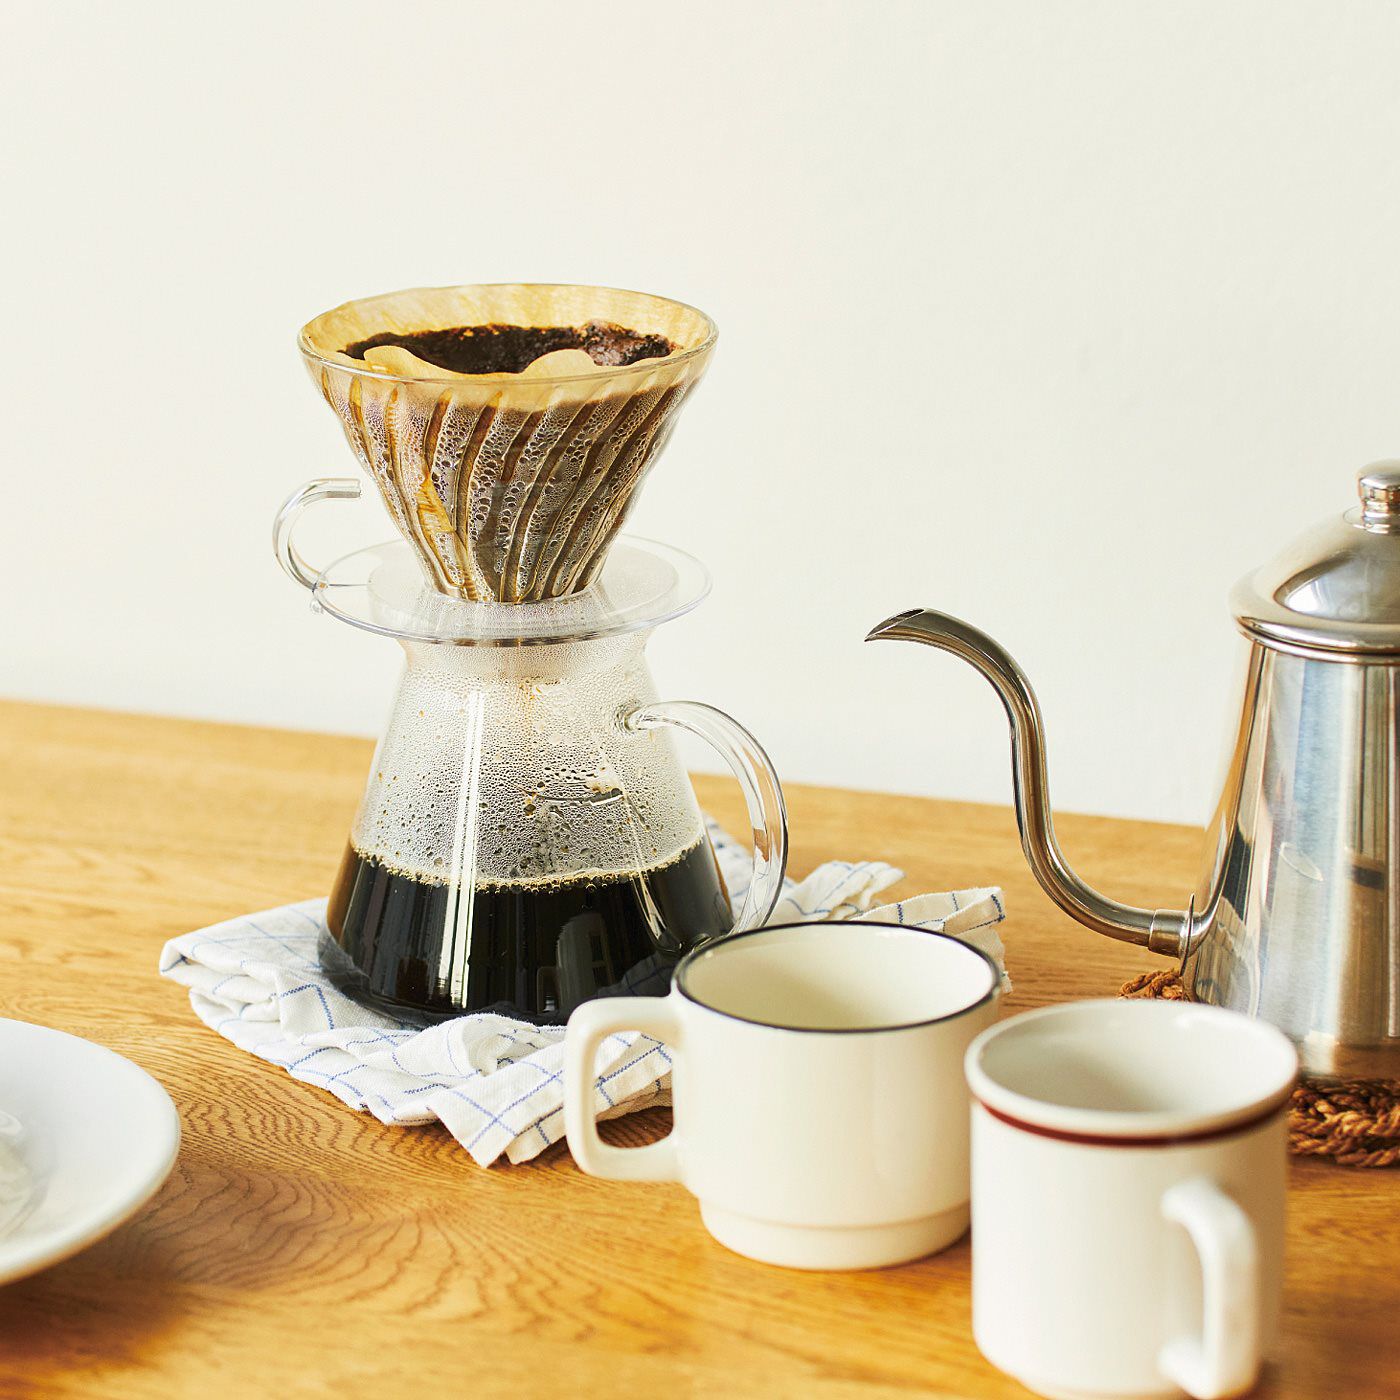 C.C.P|BIG SMILE COFFEE　おうち焙煎を楽しく始める　コーヒー焙煎パン＋おためし生豆セット|おうち焙煎でコーヒーの味わいの変化を感じながら楽しんで。